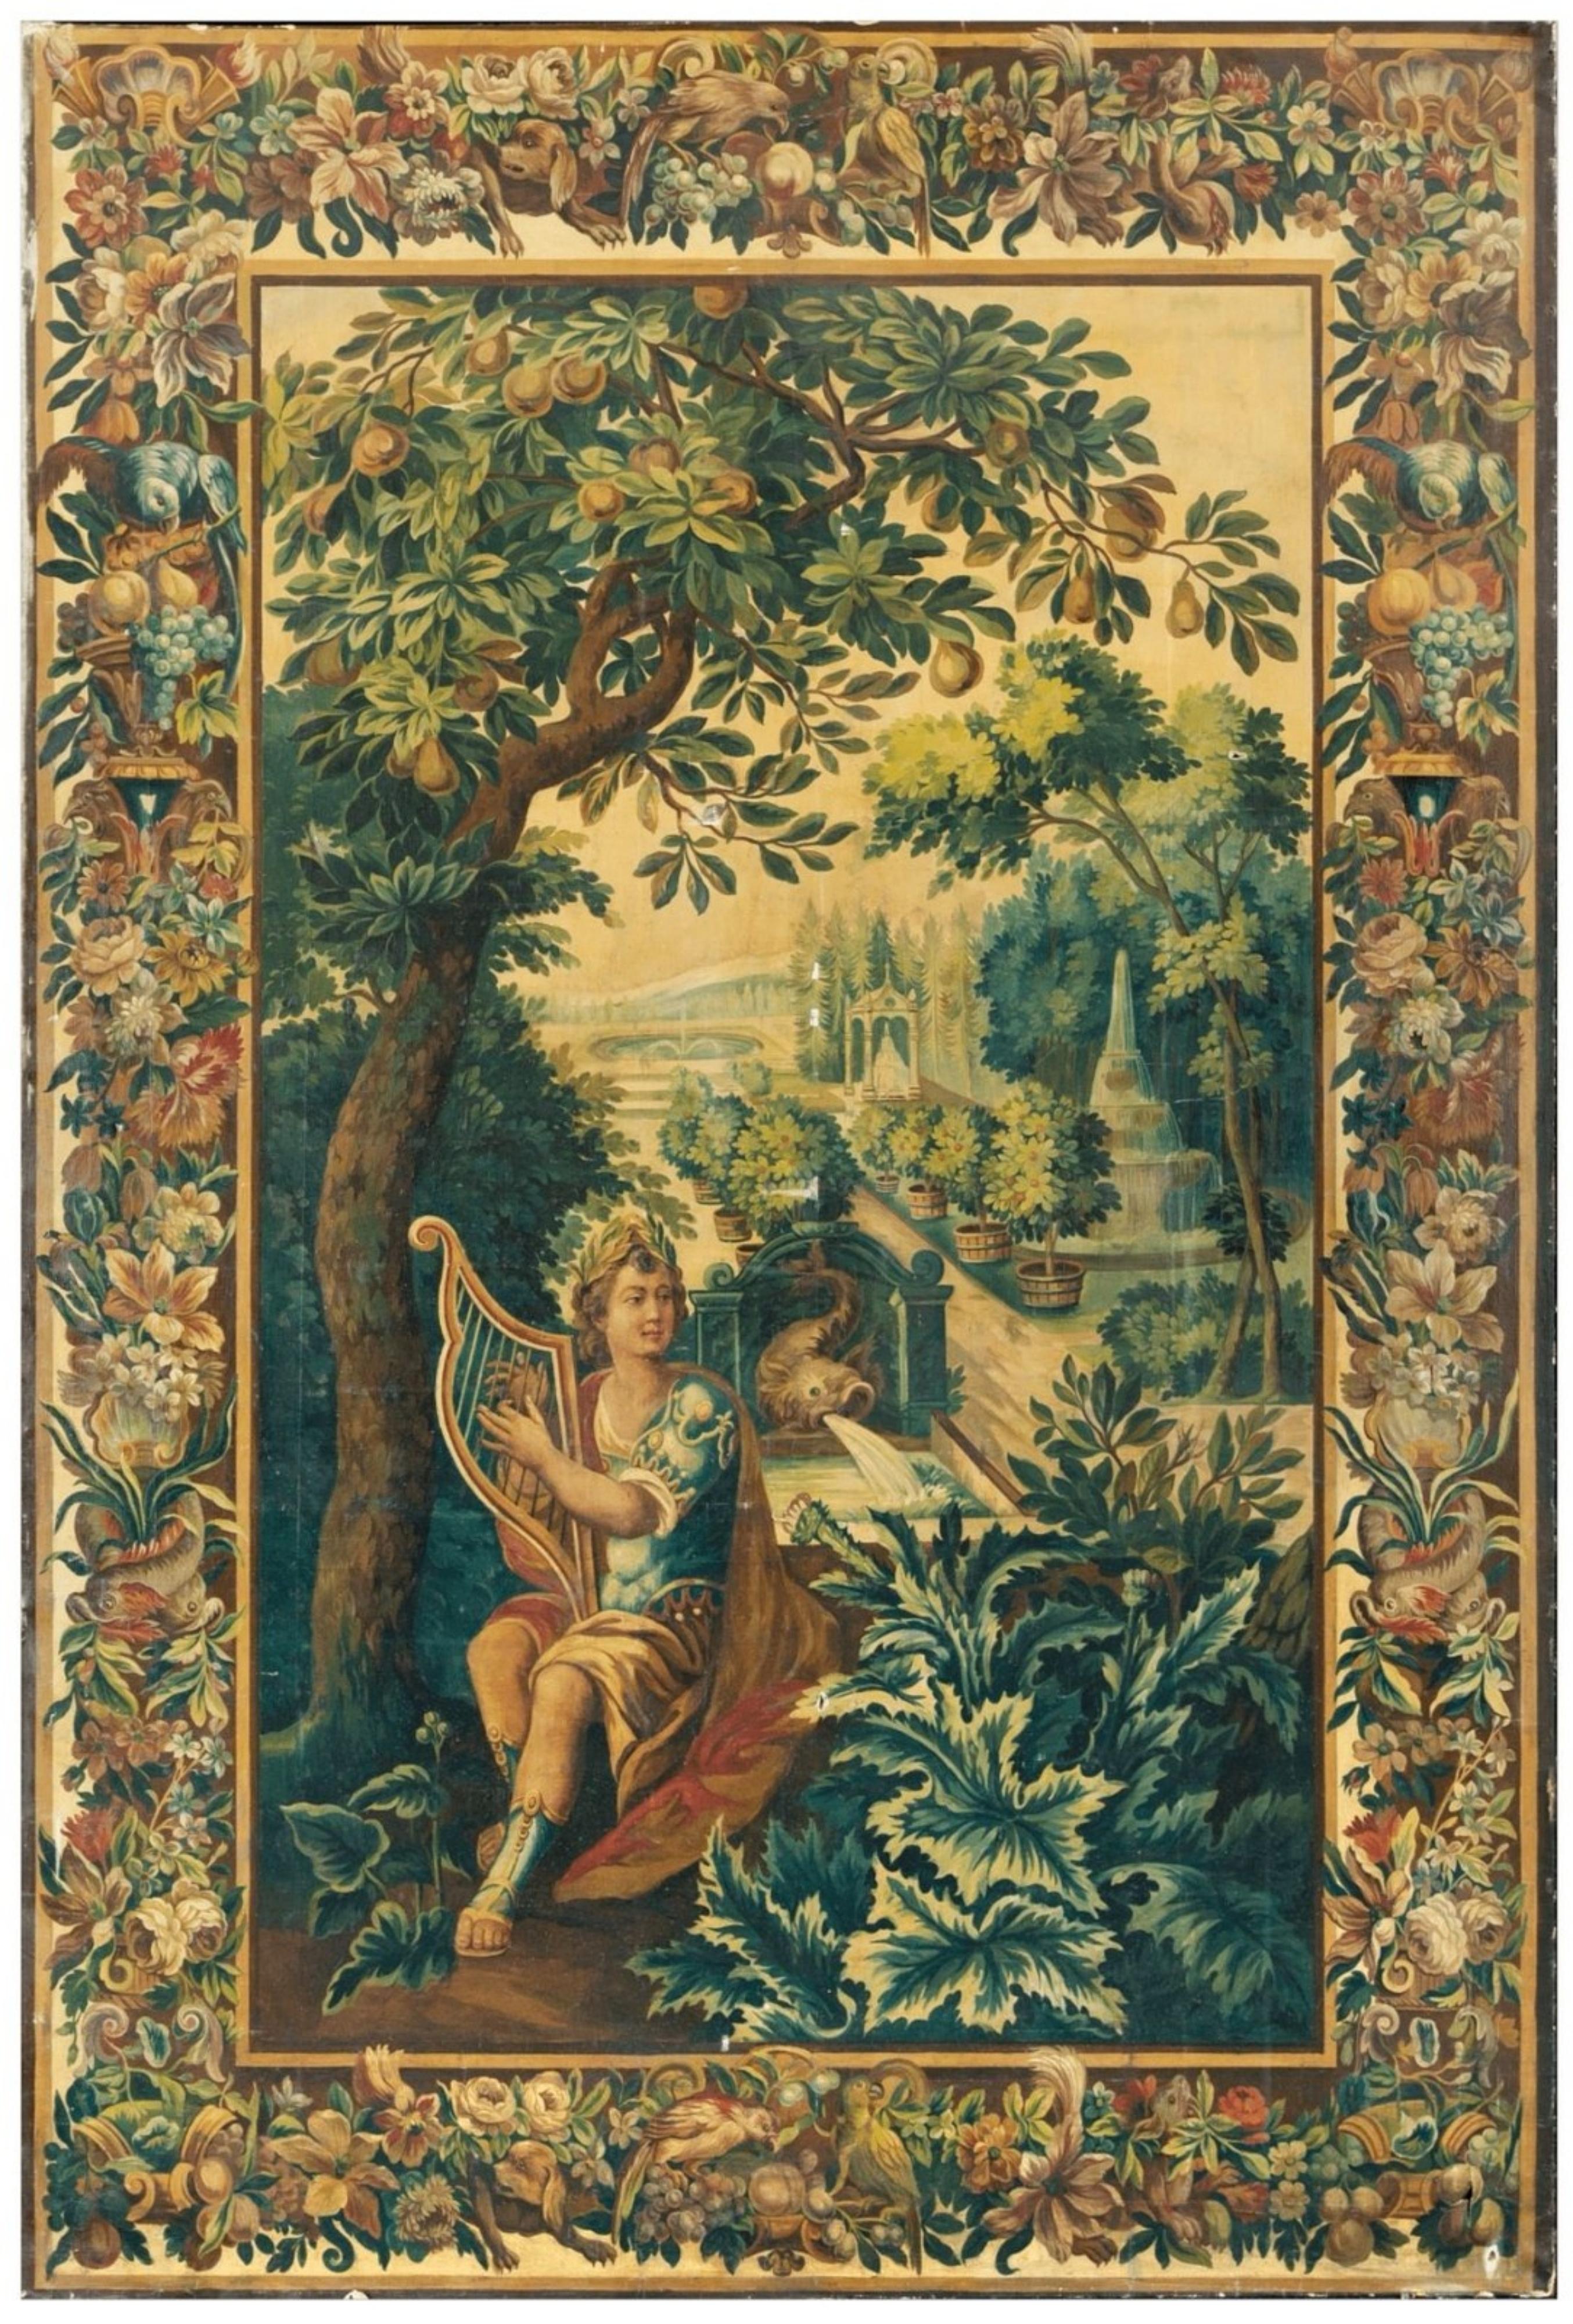 WICHTIGES GROSSES GEMÄLDE Venezianische Schule 18. Jahrhundert

mit einem mythologischen Motiv, das den Gott Apollo im Vordergrund mit seiner Lyra in einem französischen Garten, wahrscheinlich im Schloss von Versailles, darstellt.

Das Gemälde wird